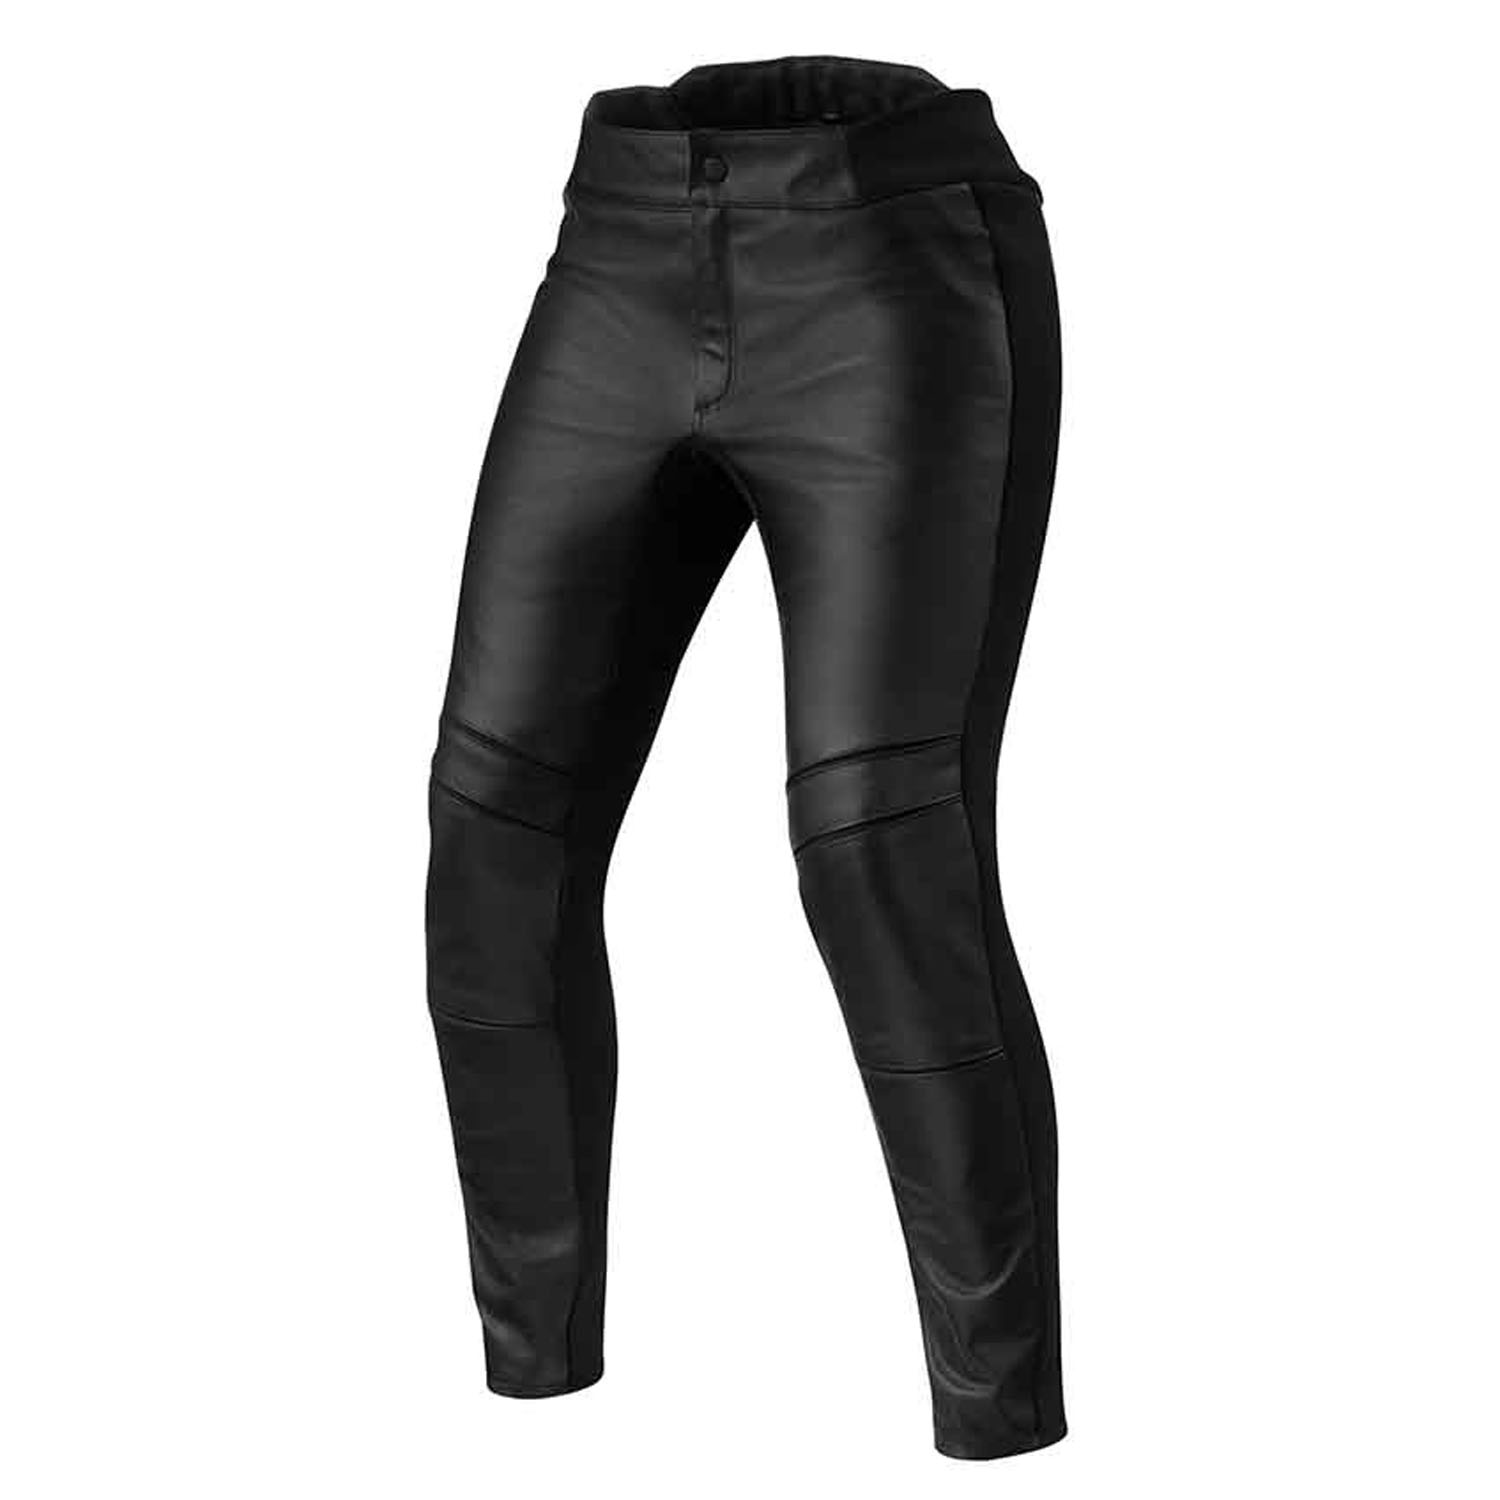 Image of REV'IT! Maci Ladies Black Standard Motorcycle Pants Size 44 EN